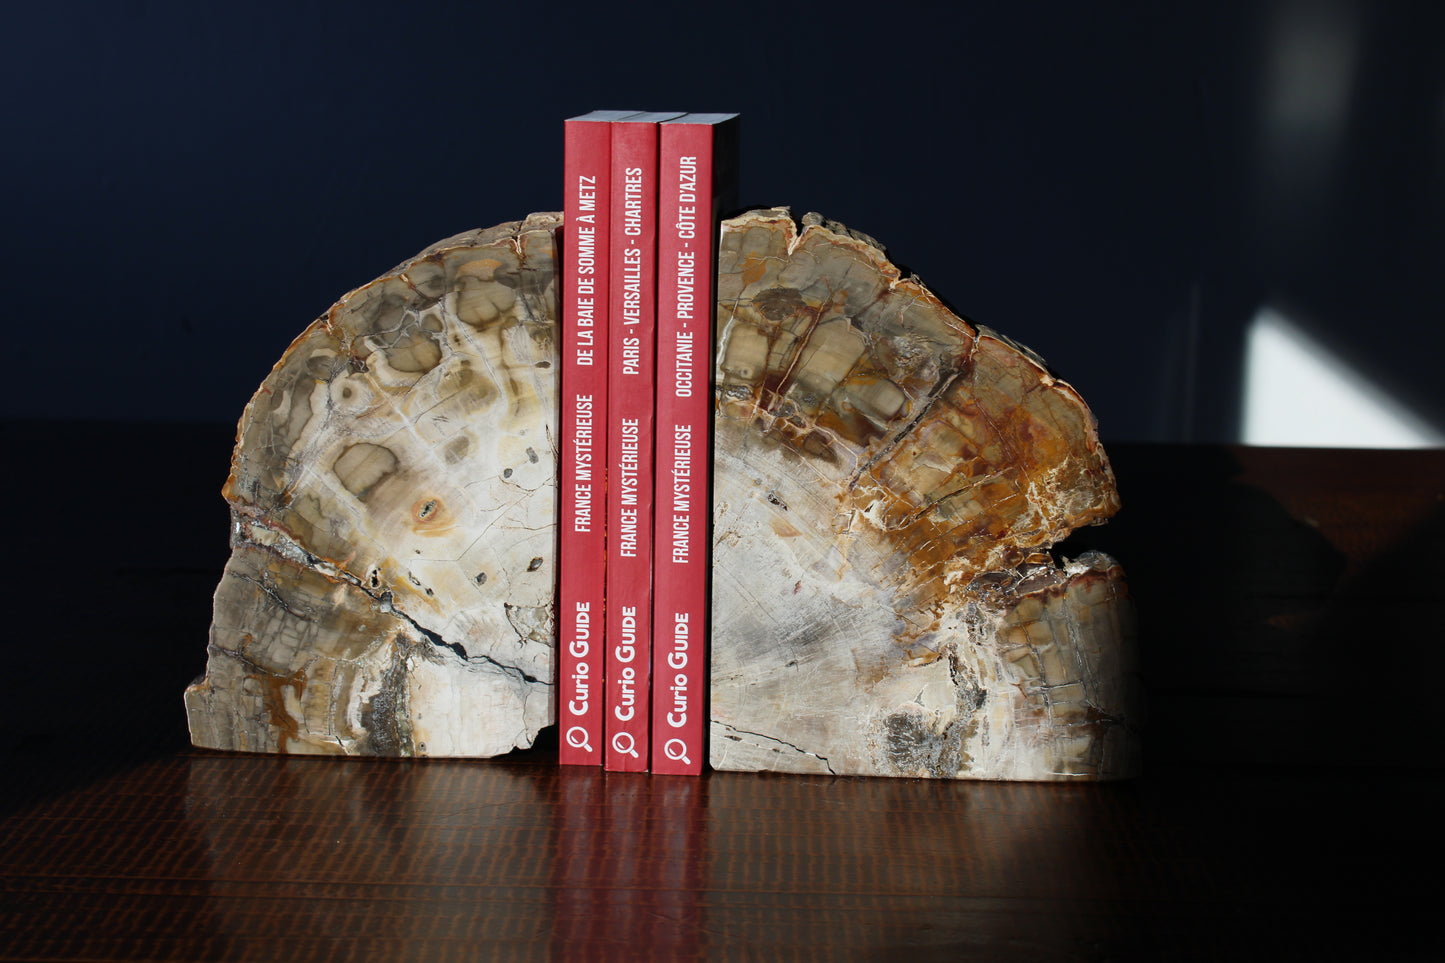 Serre livres en bois fossile  - COLIS